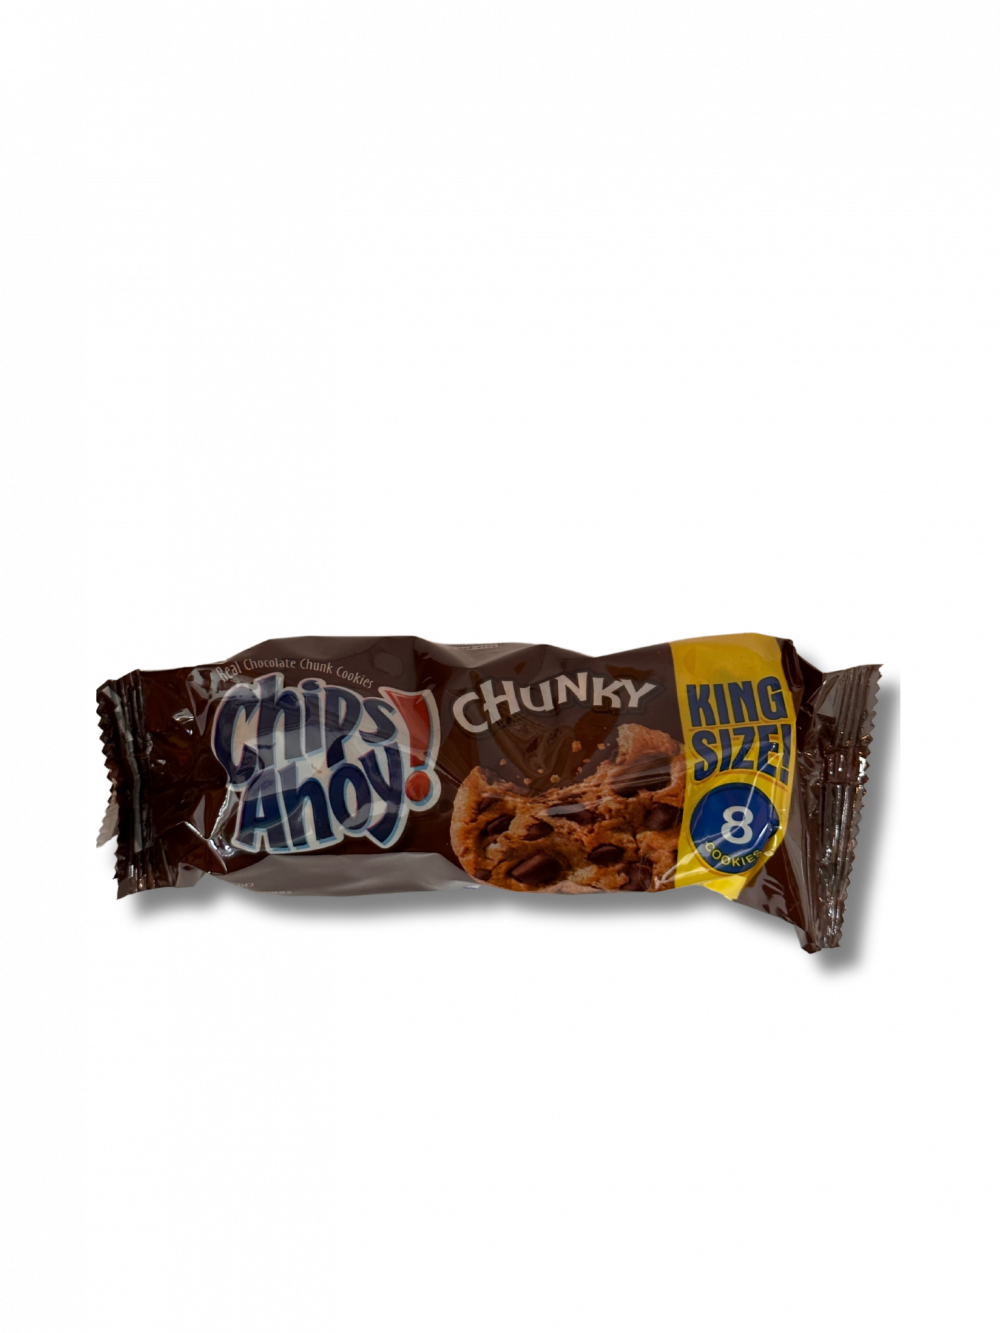 Chips Ahoy! Chunky King Size sind üppig gefüllte Schokoladenkekse, die jeden Biss zu einem köstlichen Erlebnis machen. Genieße den intensiven Schokoladengeschmack, der durch die großzügigen Schokoladenstückchen in jedem Keks verstärkt wird. […] - Breddas Hemp & Sweets Company Wuppertal